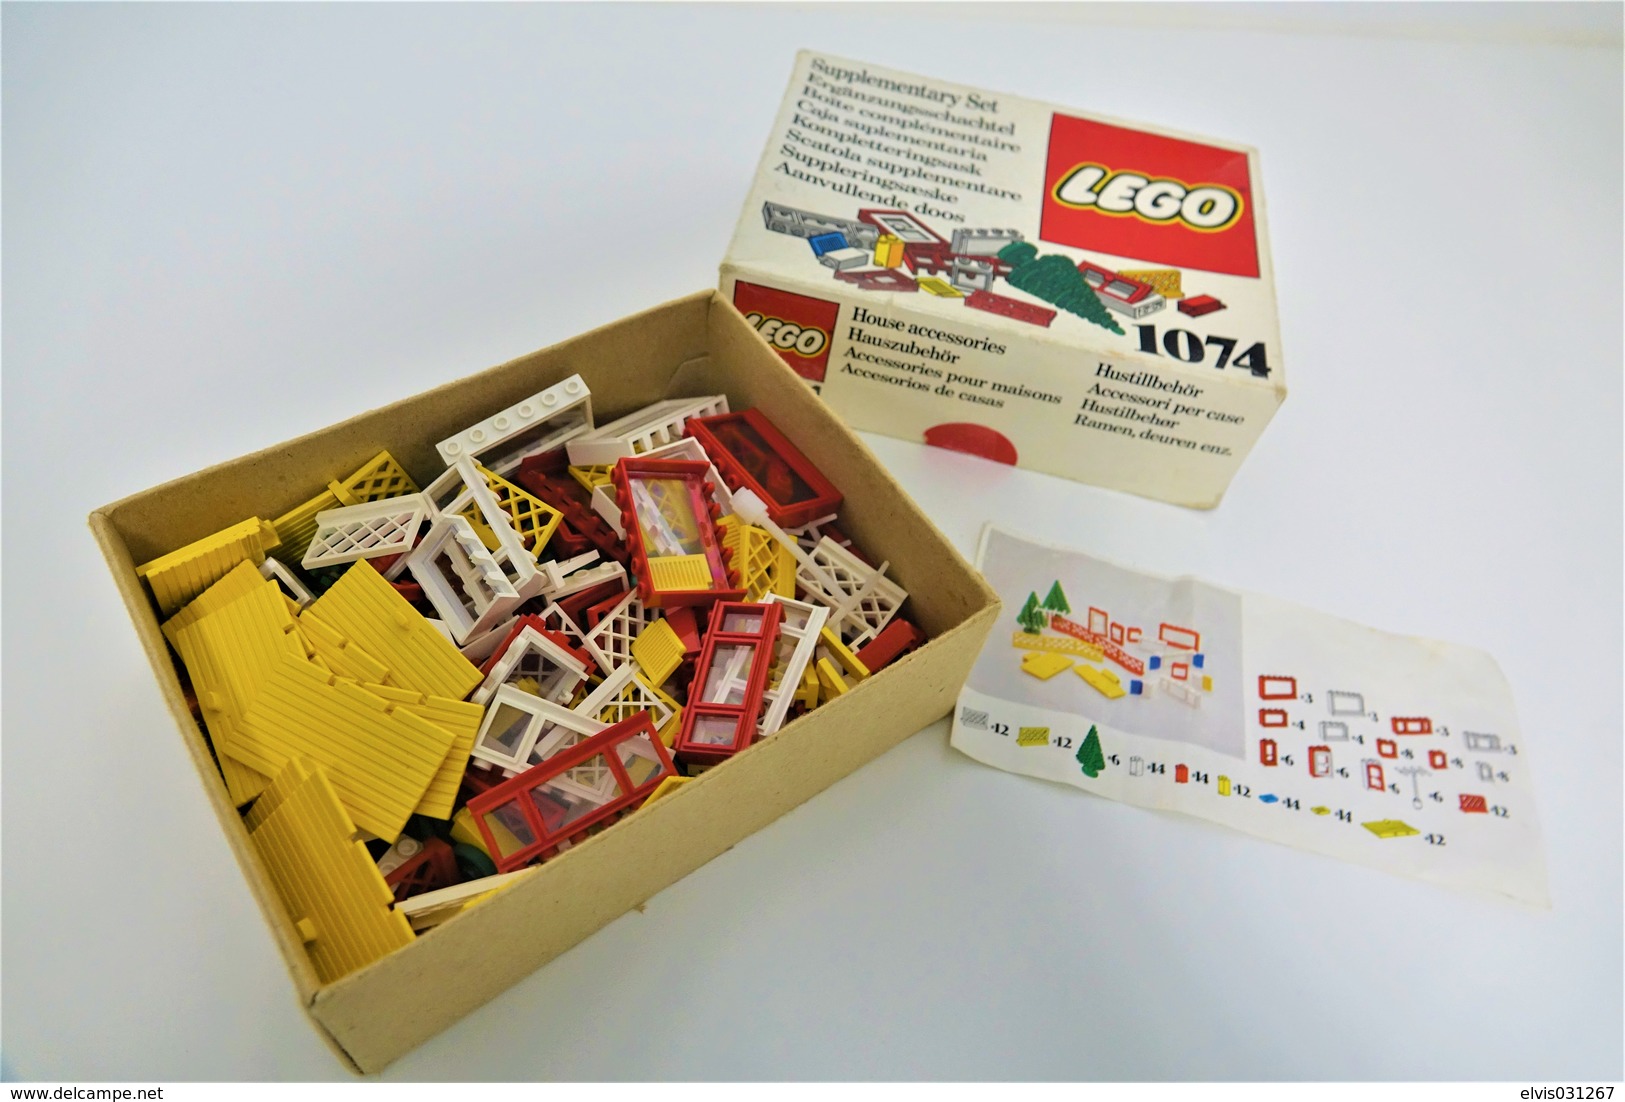 LEGO - 1074 Supplementary Box -very Rare - Original Box - Original Lego 1976 - Vintage - Catalogues